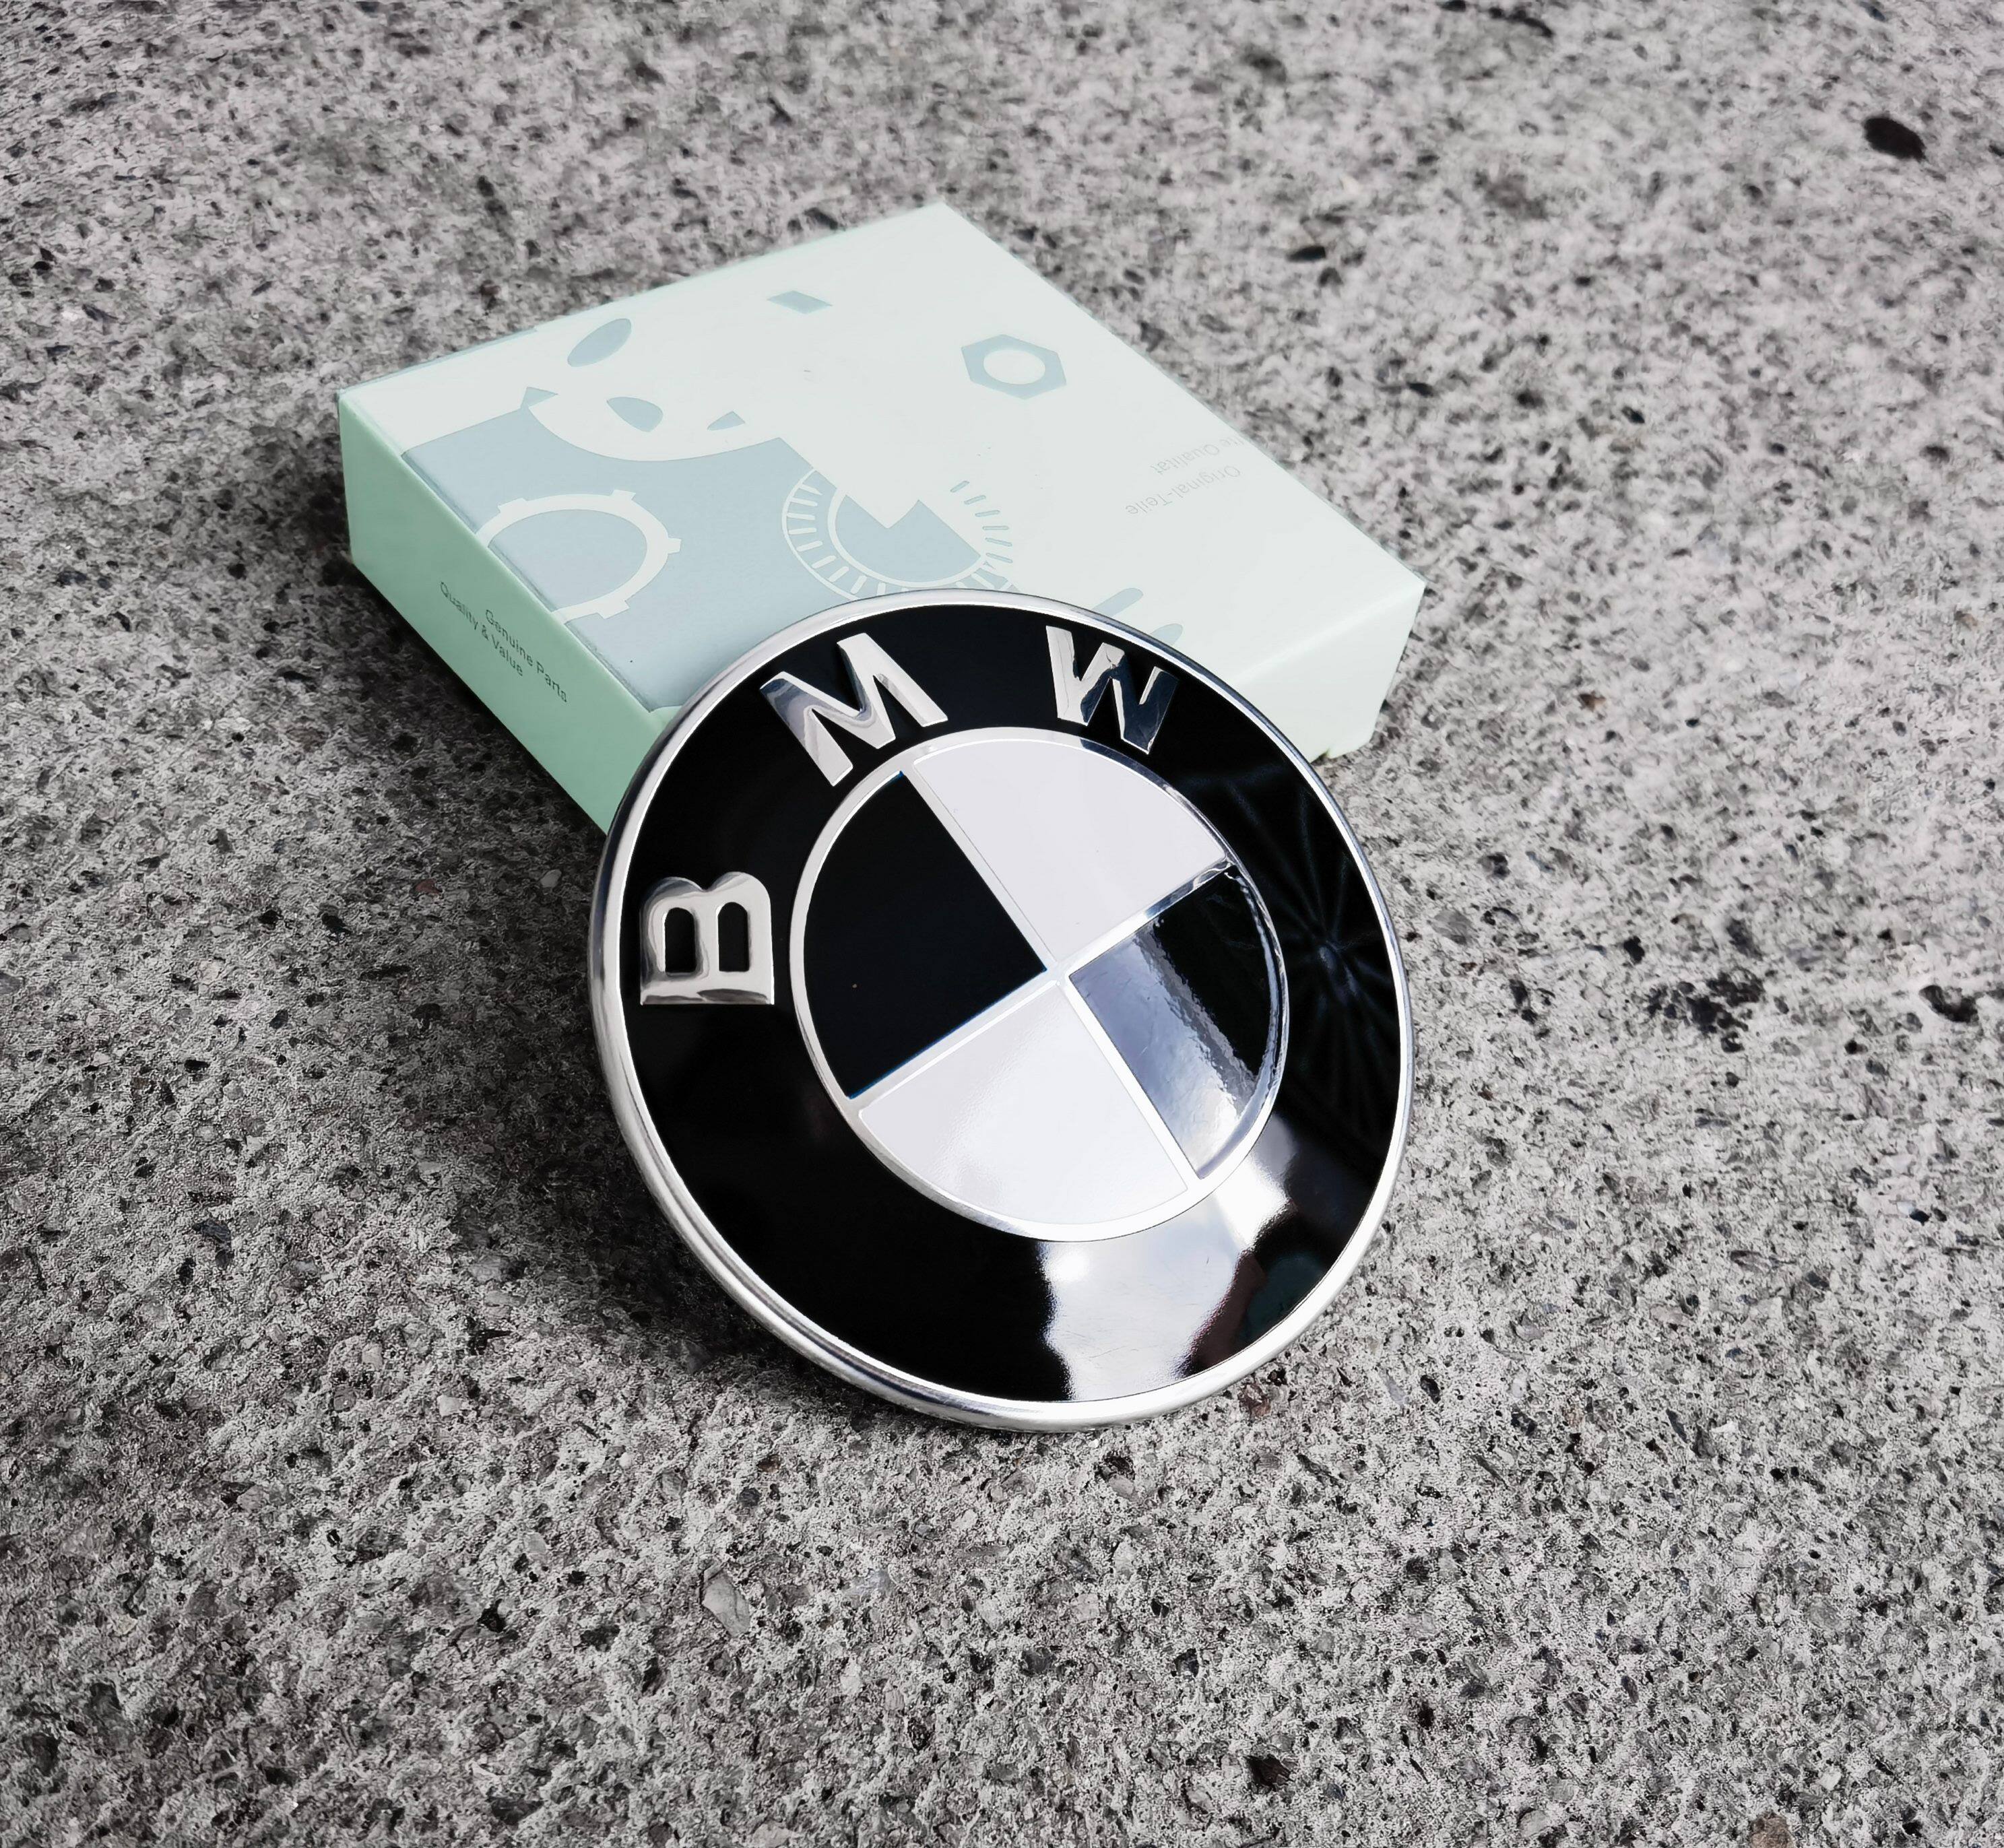 BMW Logo Front Hood Rear Badge Emblem 82mm Black White For BMW E60 E90 E46  E30 F30 F10 F20 E36 F15 F25 X5 X3